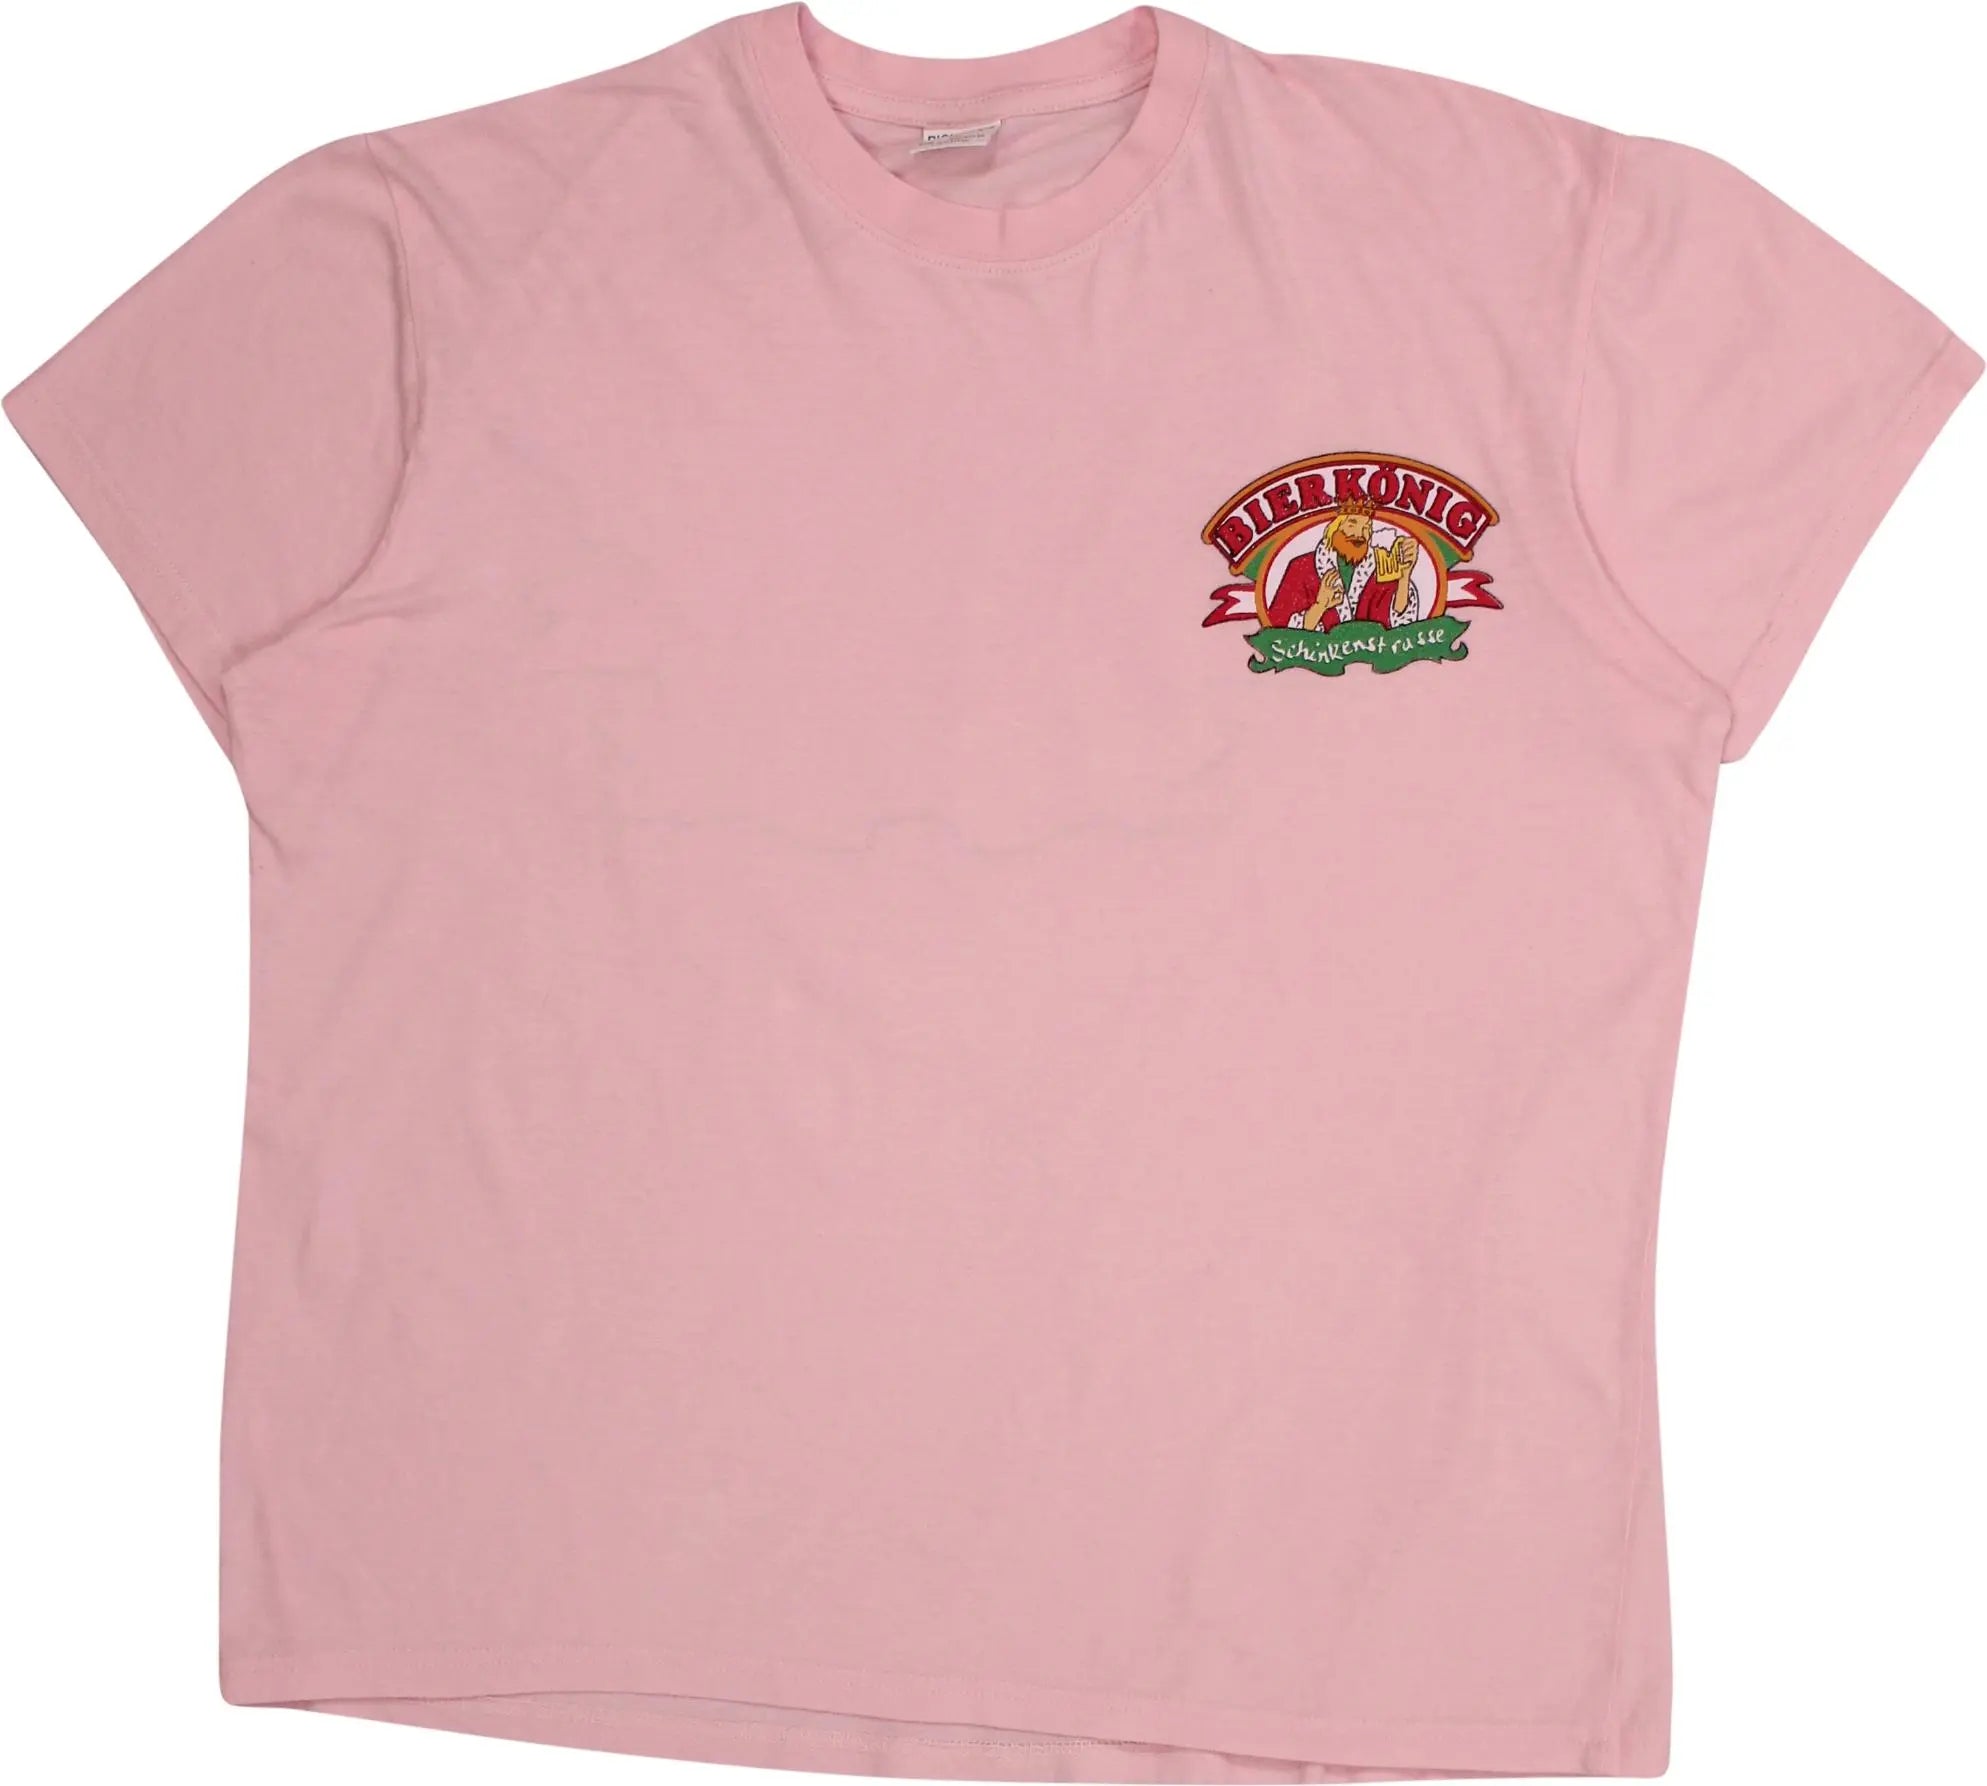 Unknown - Bierkönig Schinkenstrasse Pink T-shirt- ThriftTale.com - Vintage and second handclothing